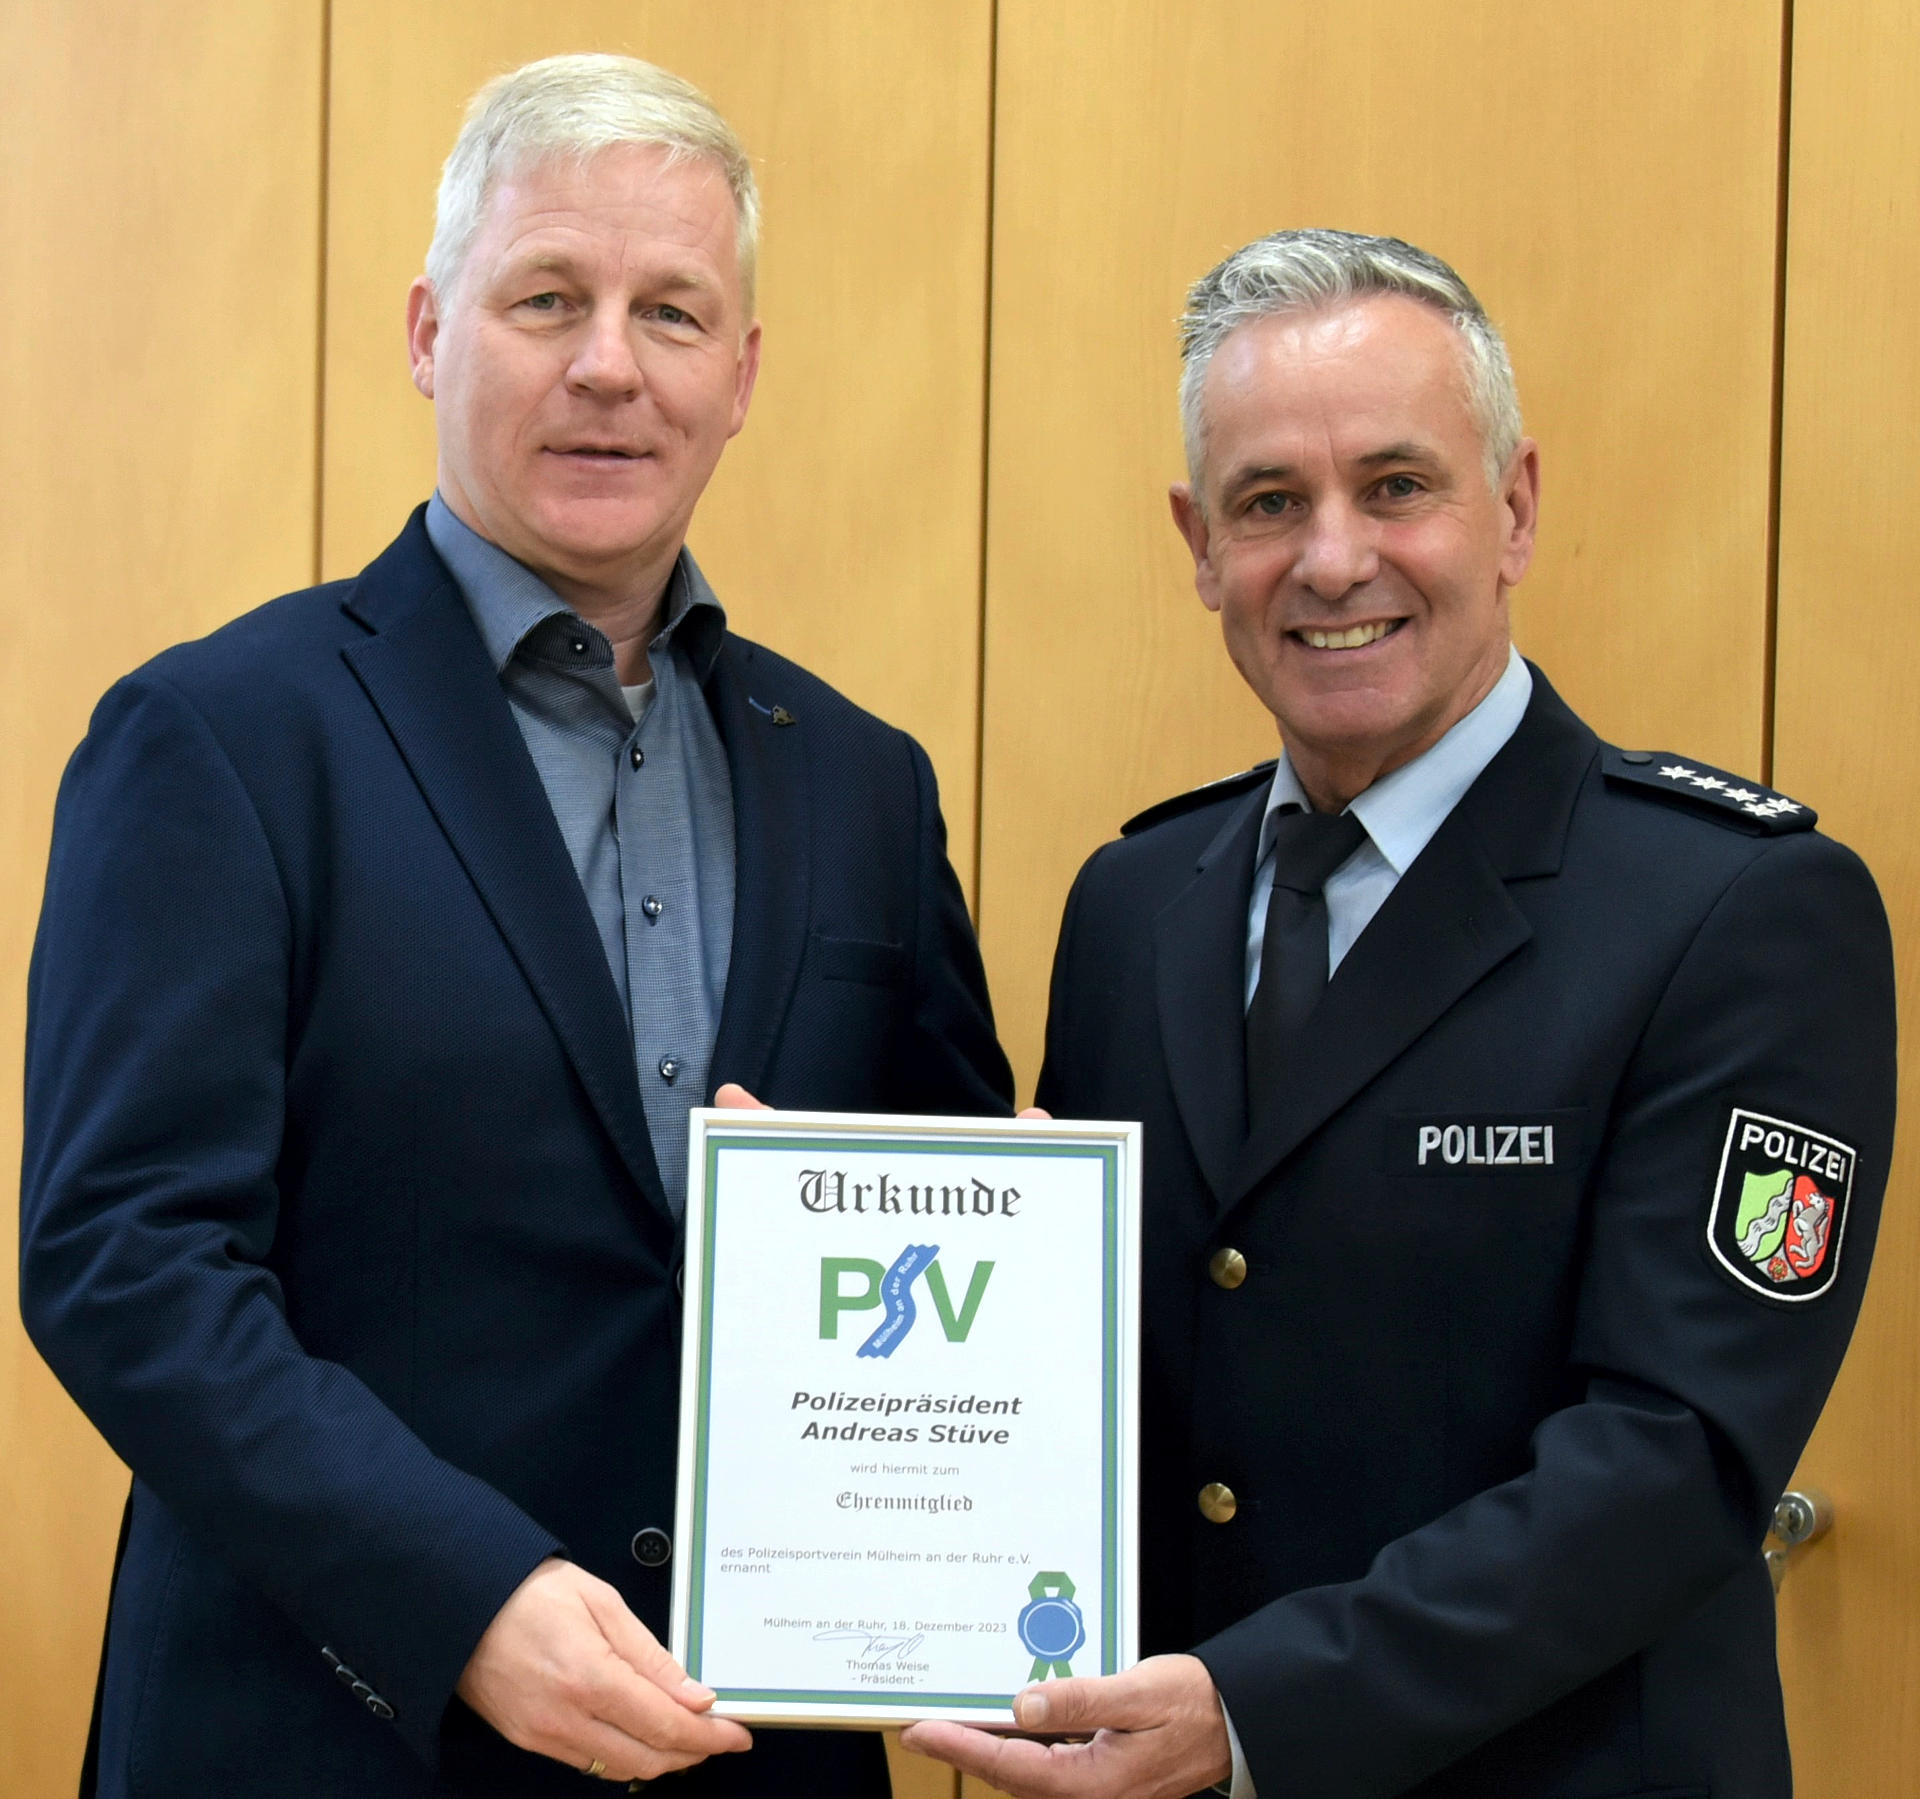 Polizeipräsident Andreas Stüve zum Ehrenmitglied ernannt